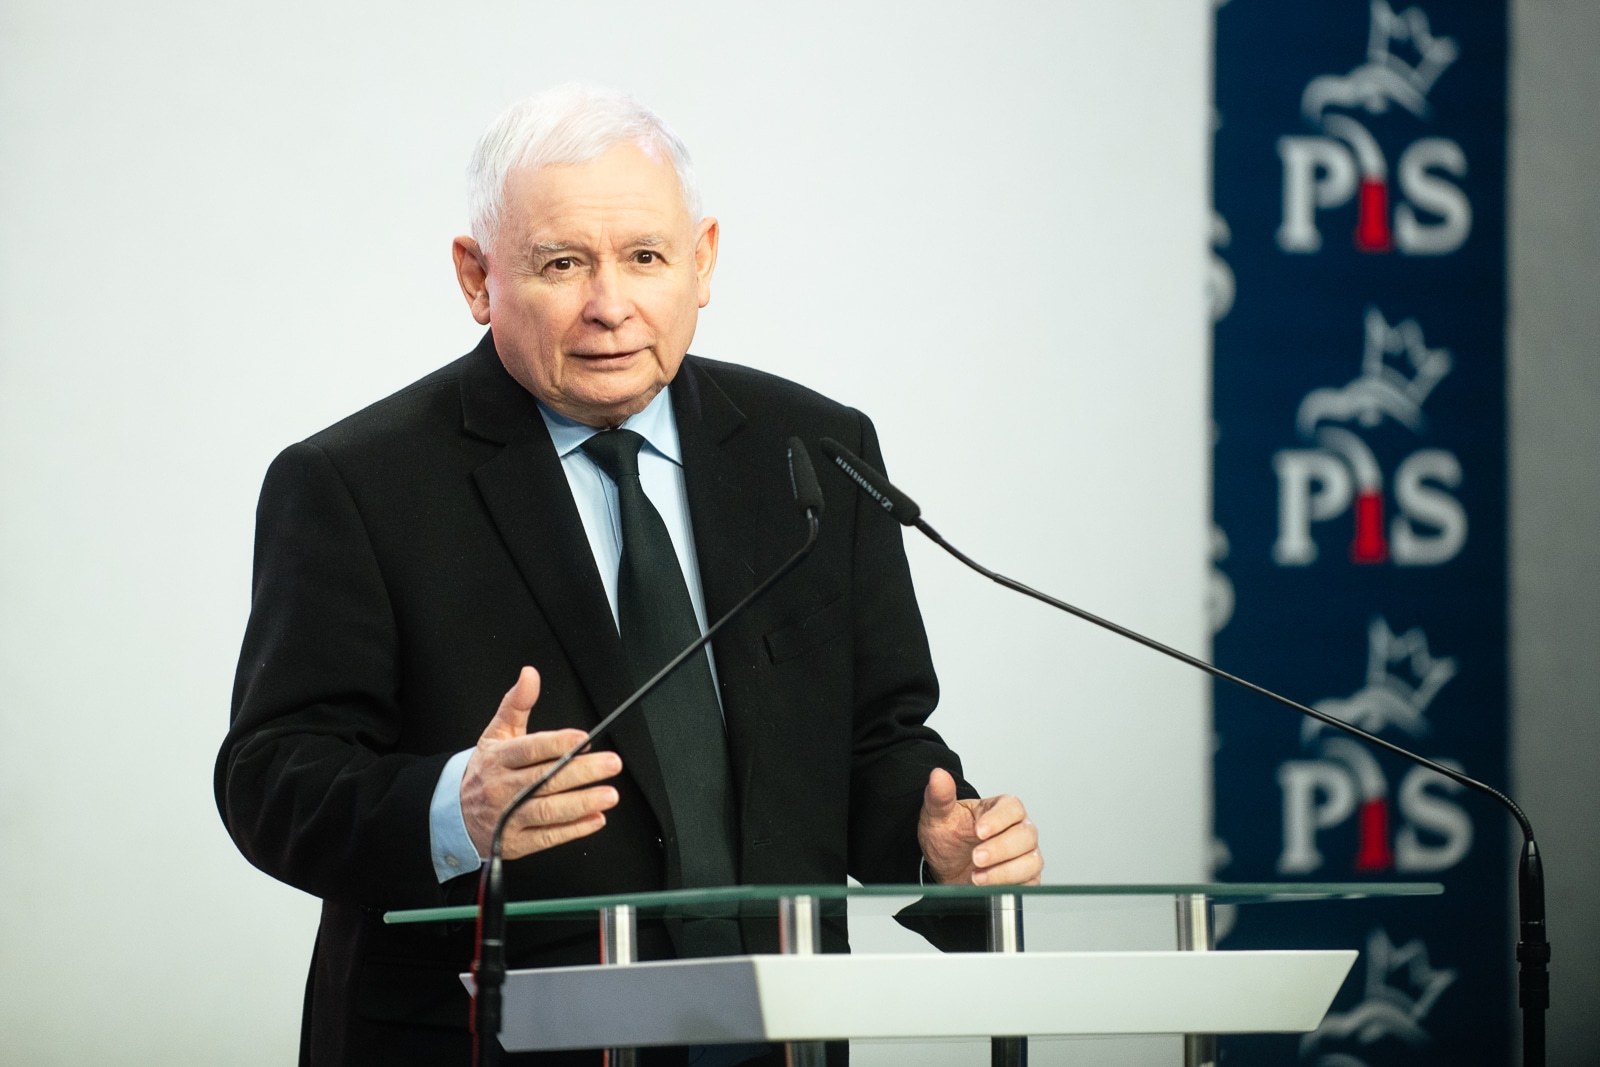 Prezes PiS Jarosław Kaczyński w szpitalu. Musiał interweniować chirurg polityka Wiadomości